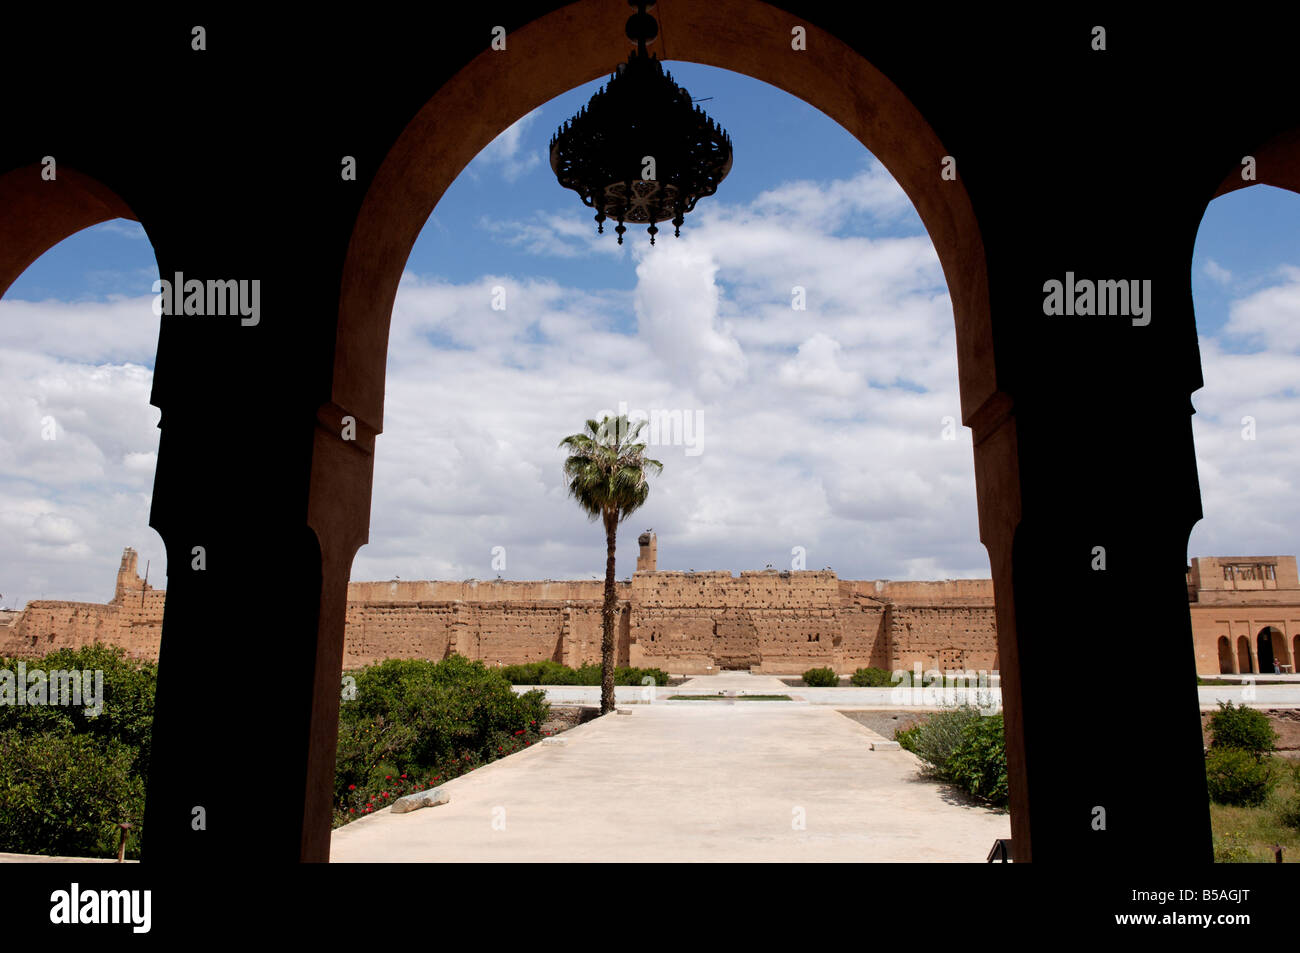 La Badia palace construit par le sultan Ahmed el Mansour dahbi-Ad de la dynastie saadienne, Marrakech, Maroc, Afrique Banque D'Images